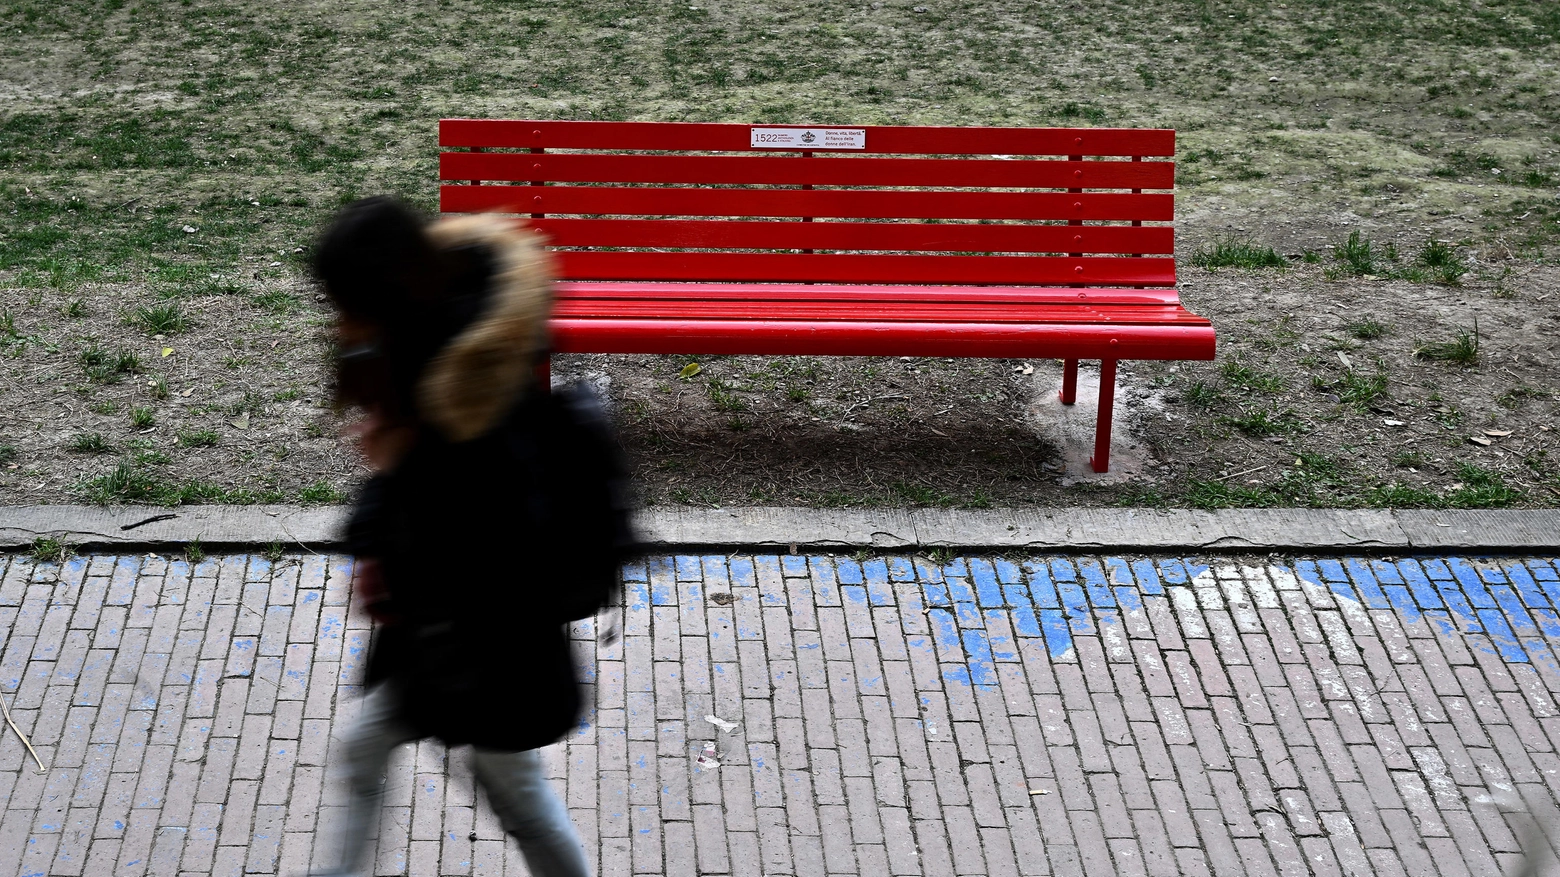 La panchina rossa, uno dei simboli contro la violenza alle donne